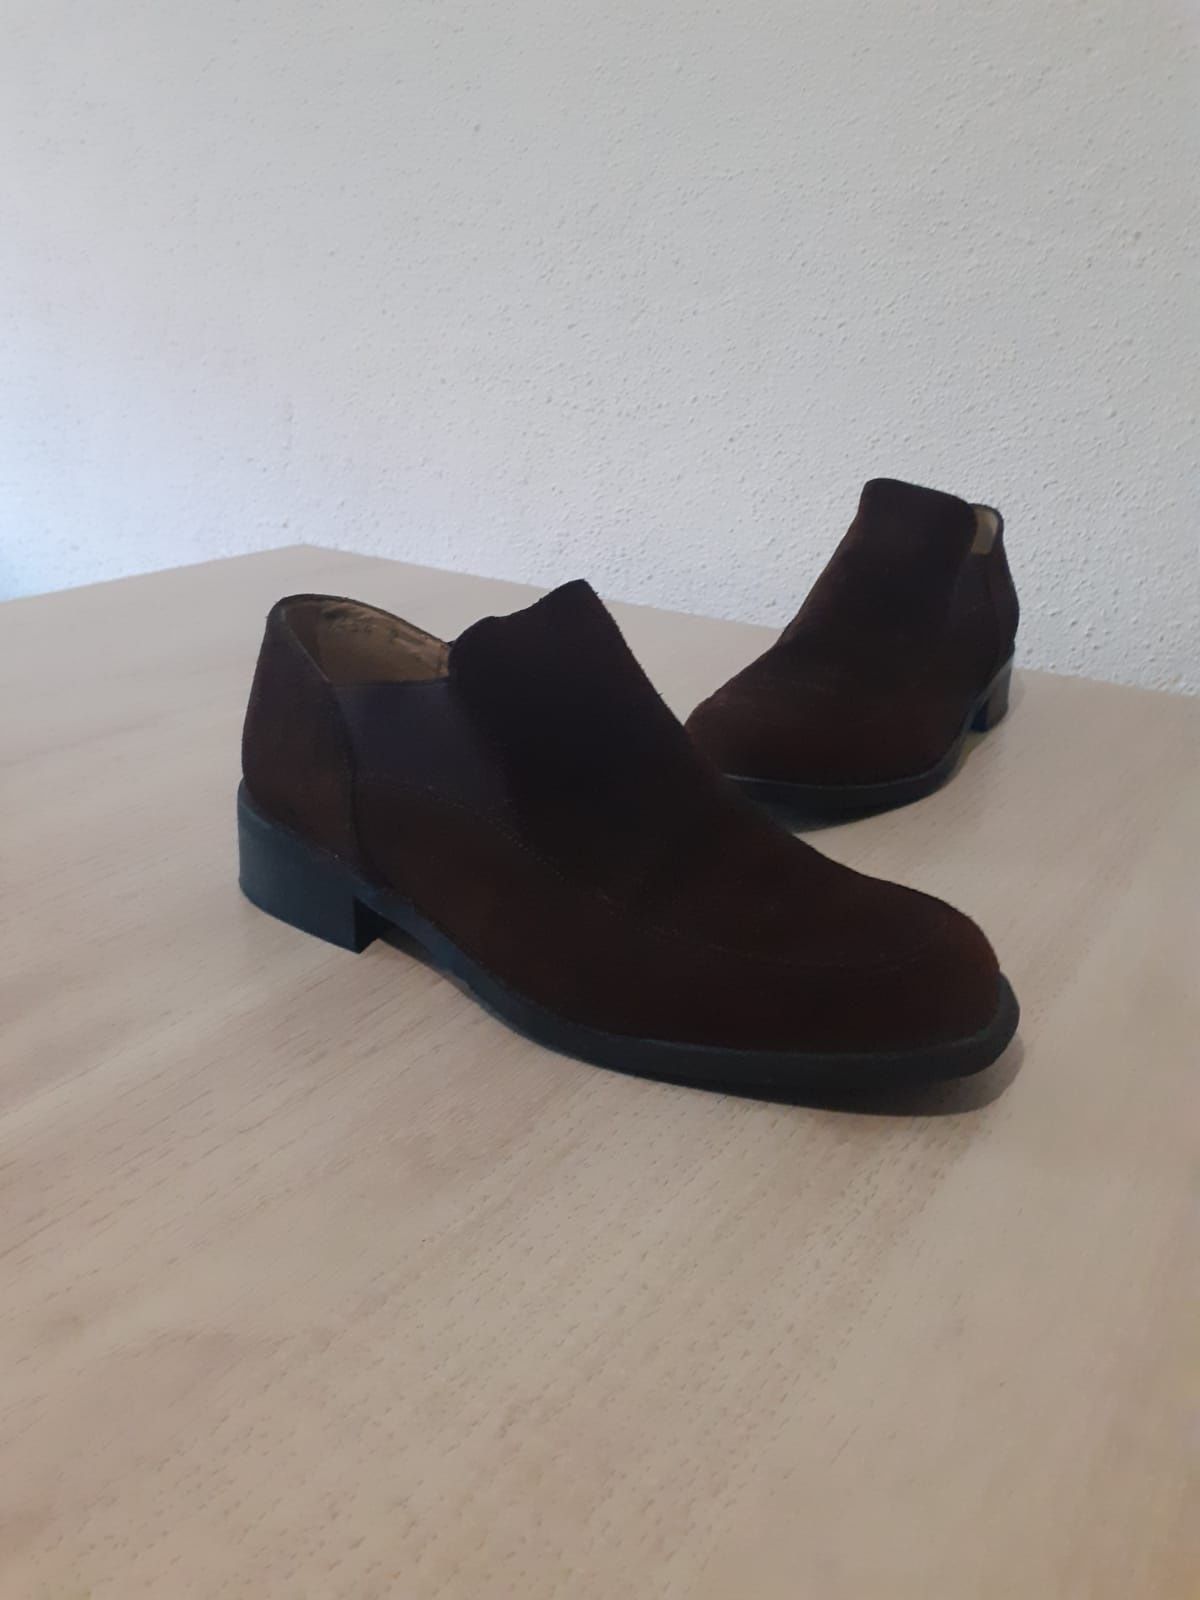 Sapatos Serenela Tamanho 35